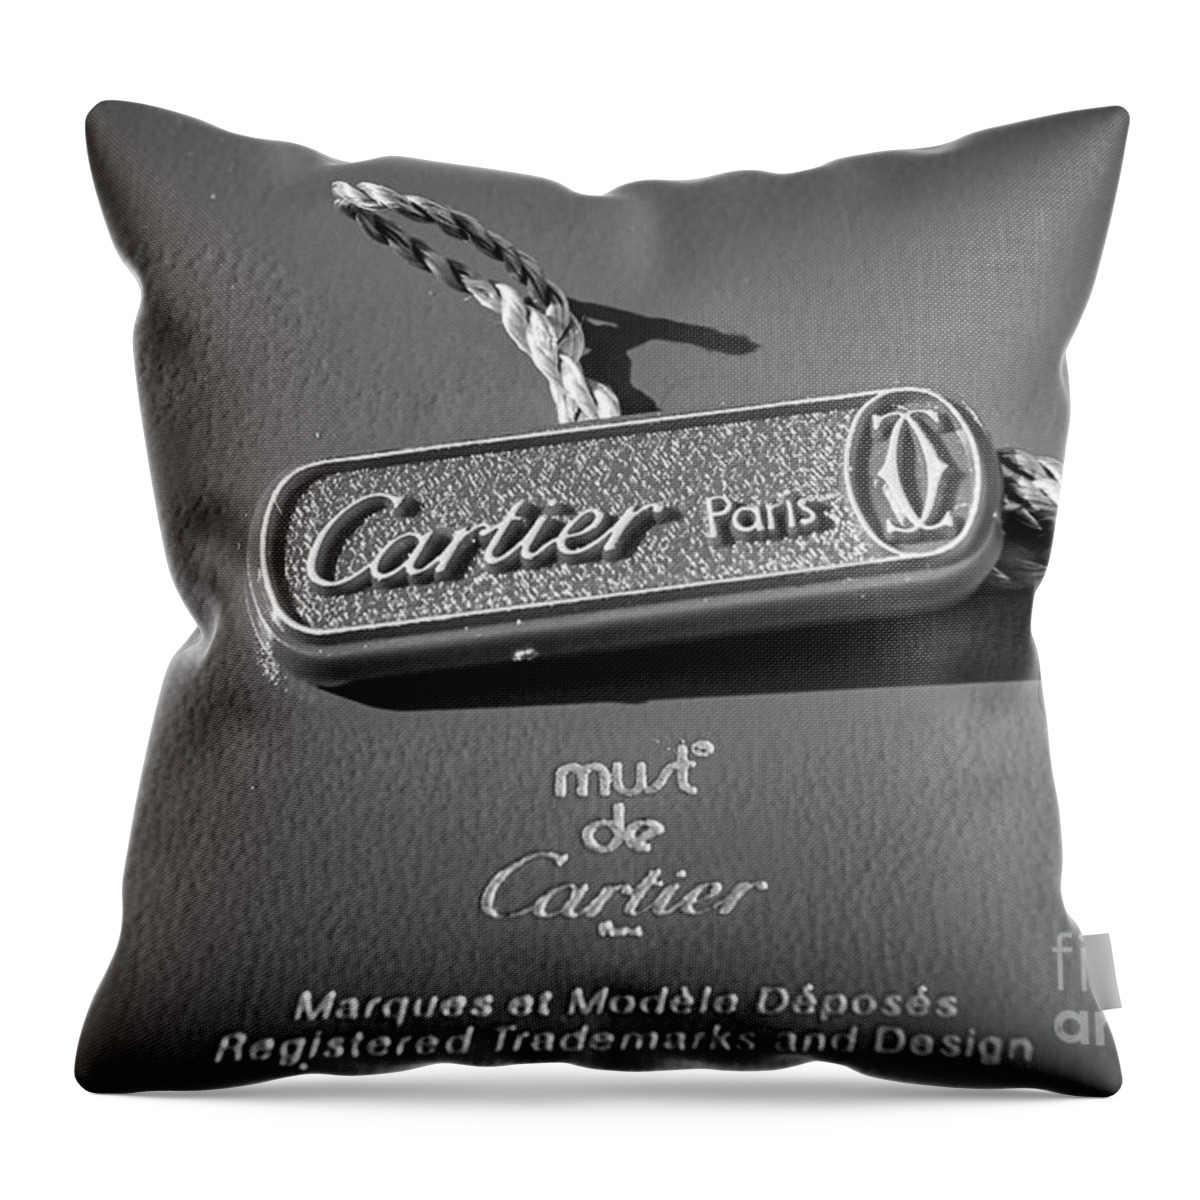 Must De Cartier Throw Pillow featuring the photograph Vintage must de cartier paris by Stefano Senise